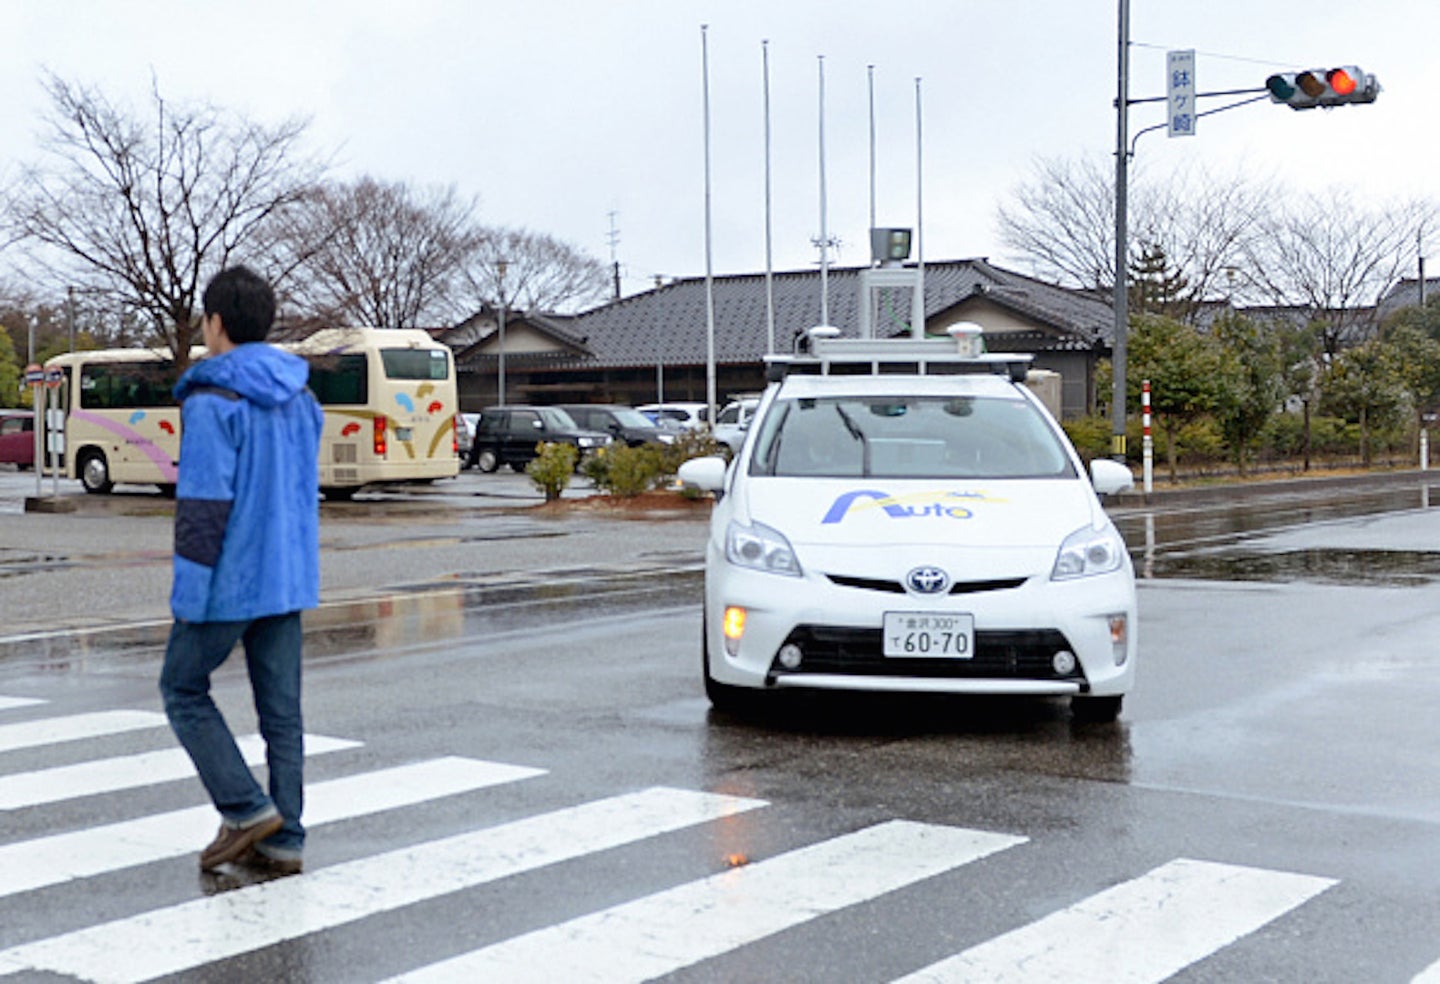 Driverless Car Trials Begin on Public Roads in Ishikawa